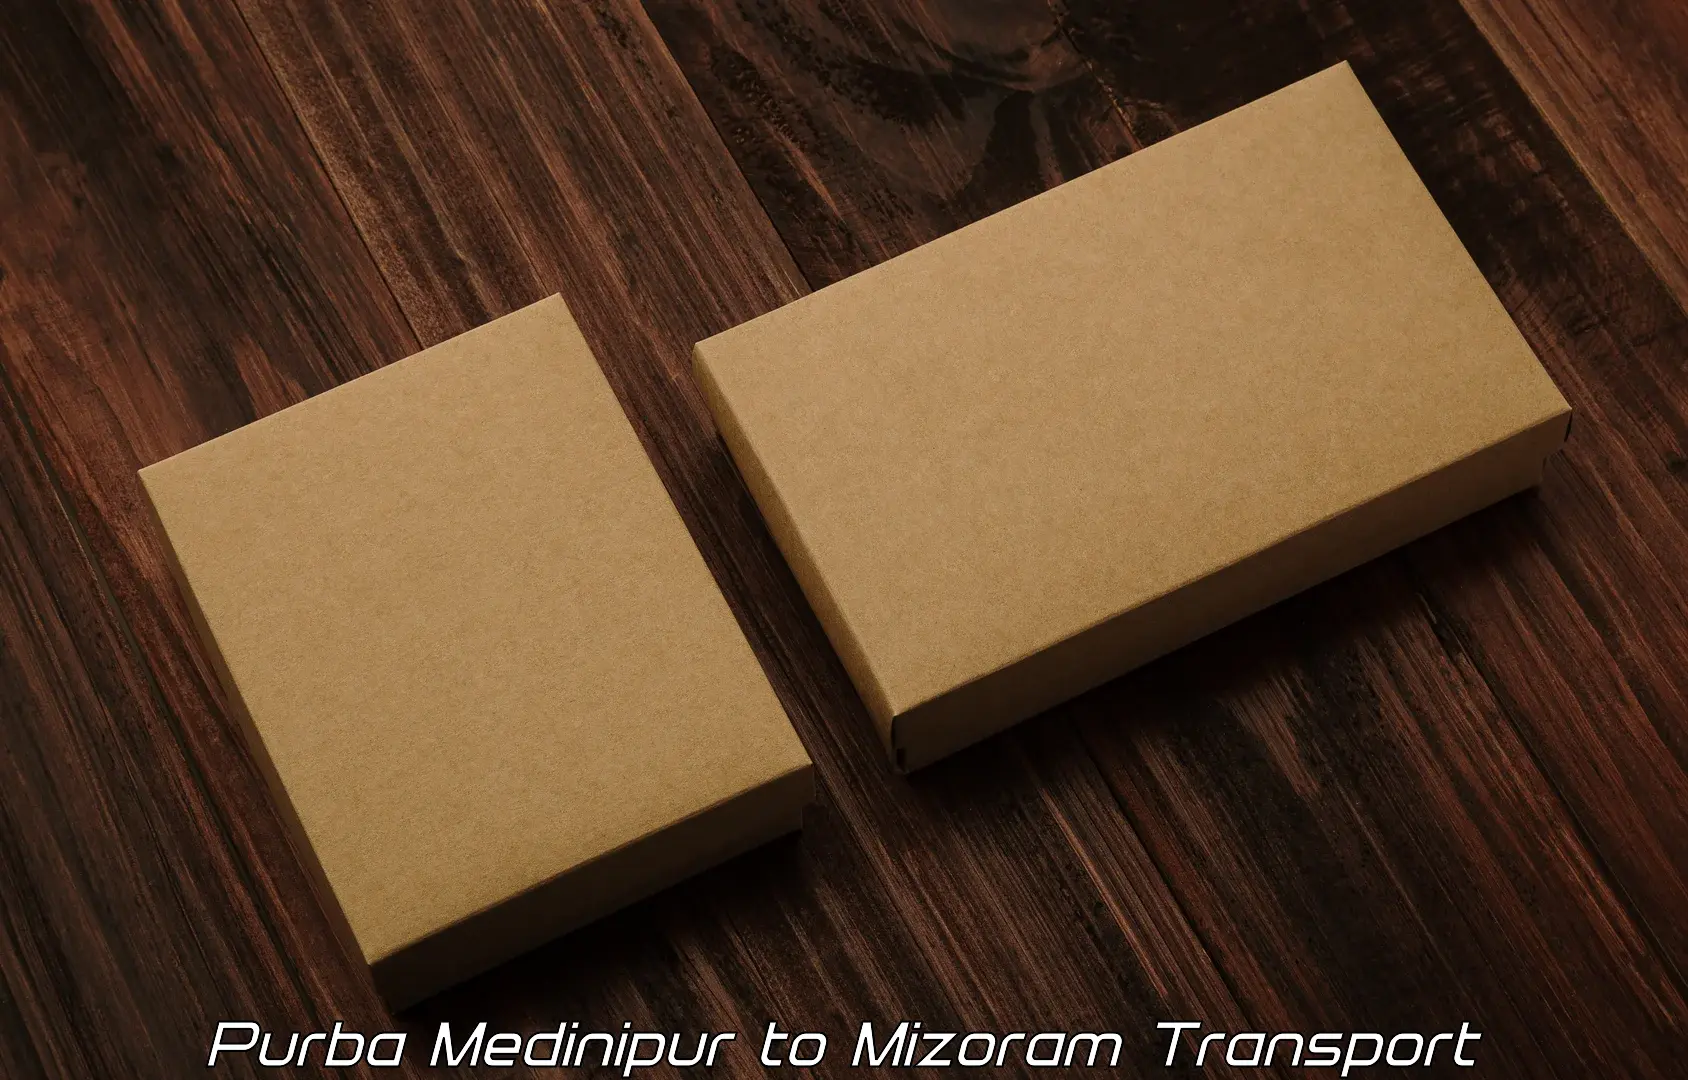 Shipping partner Purba Medinipur to Kolasib